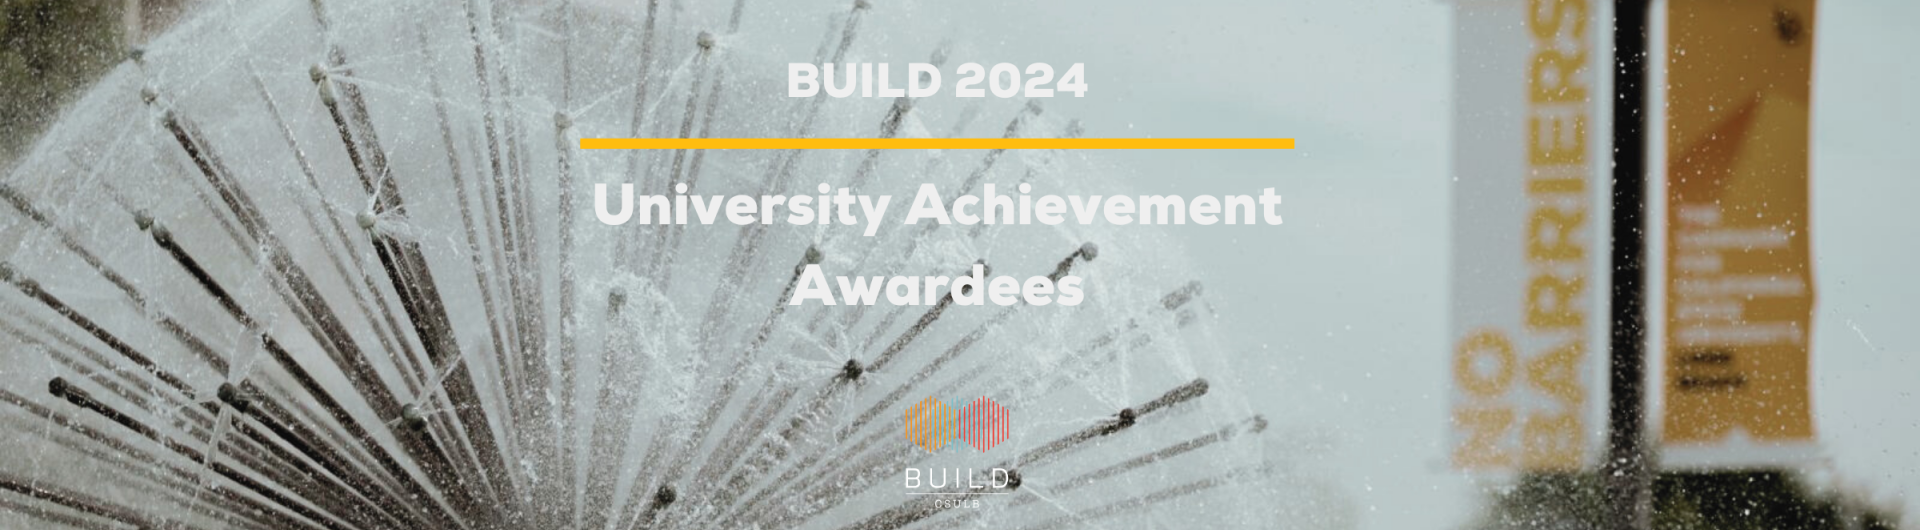 Build 2024 University Award - Banner